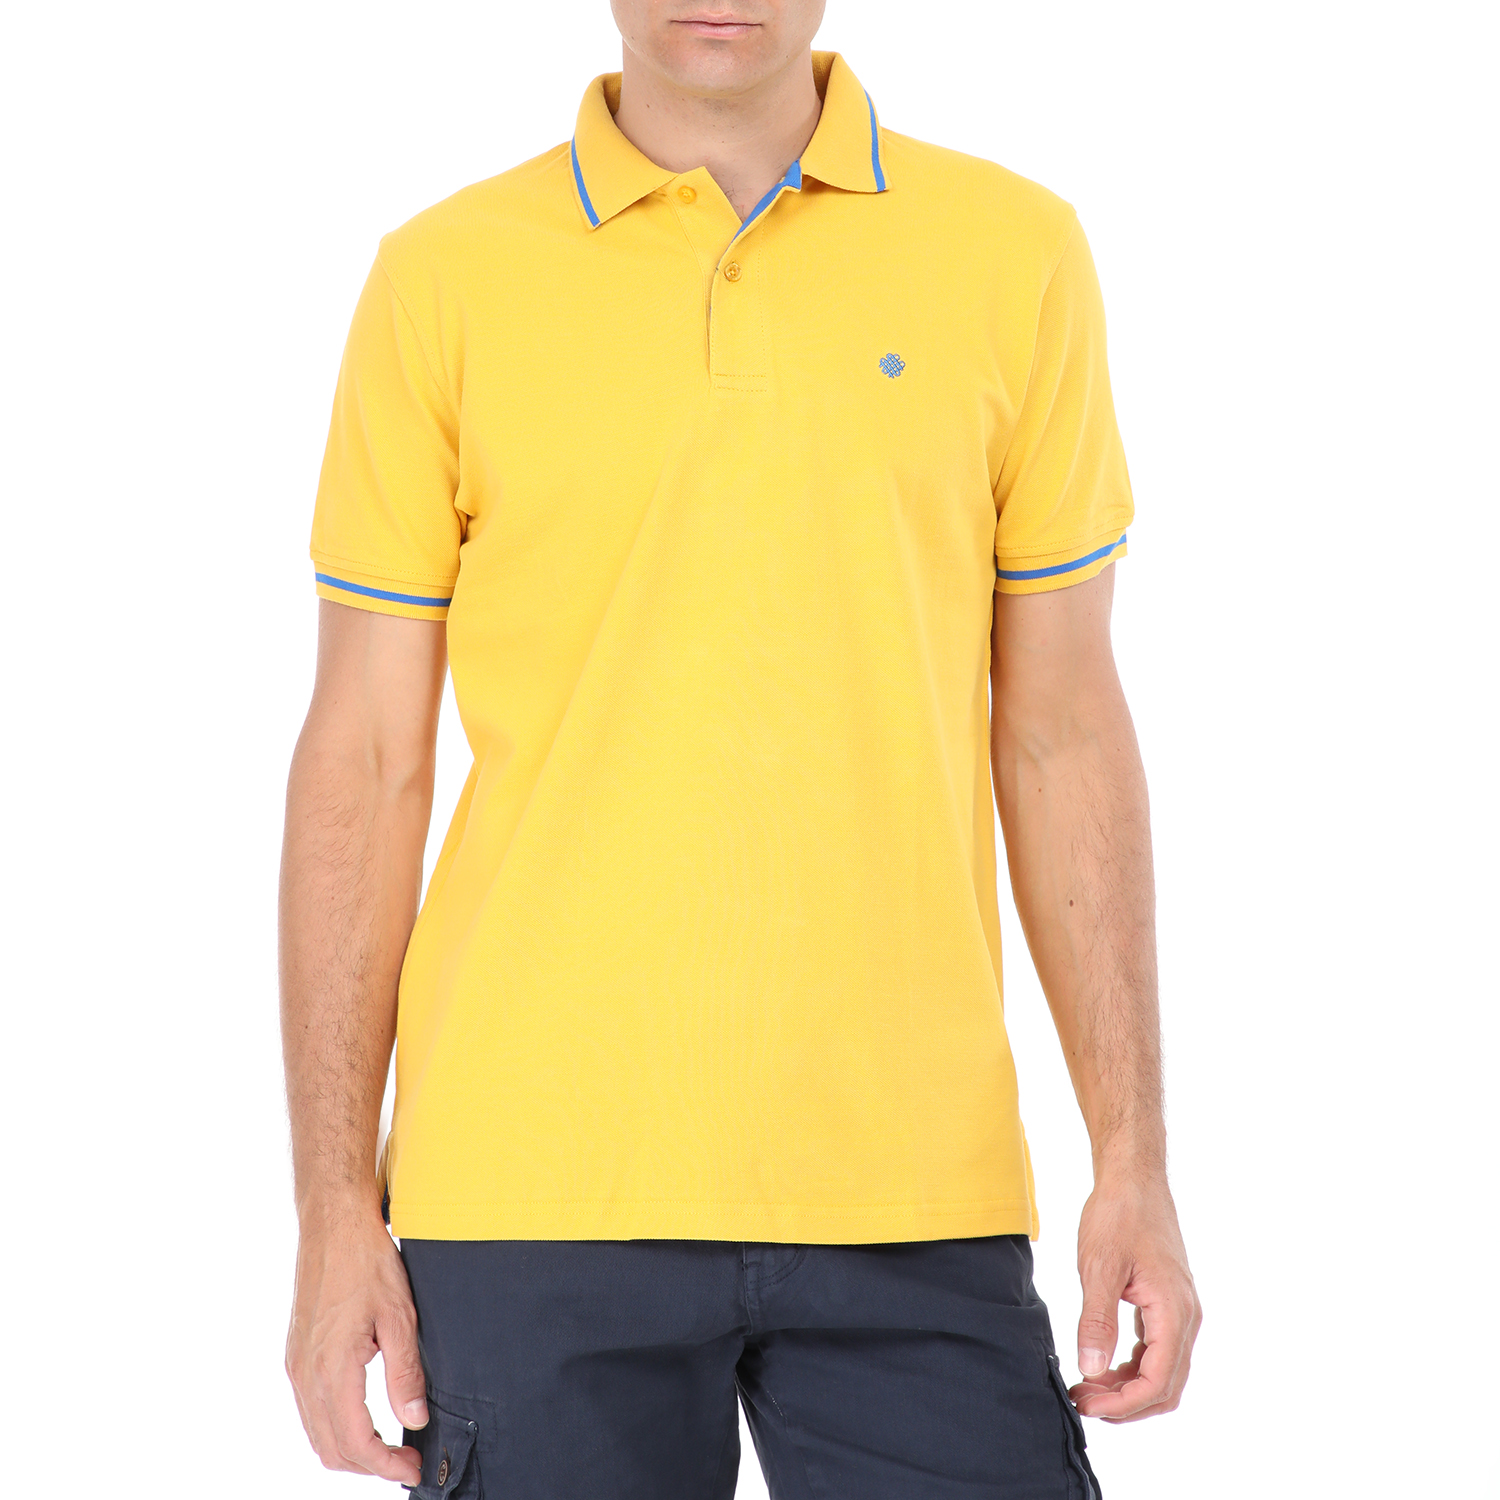 Ανδρικά/Ρούχα/Μπλούζες/Πόλο DORS - Ανδρική polo μπλούζα DORS κίτρινη